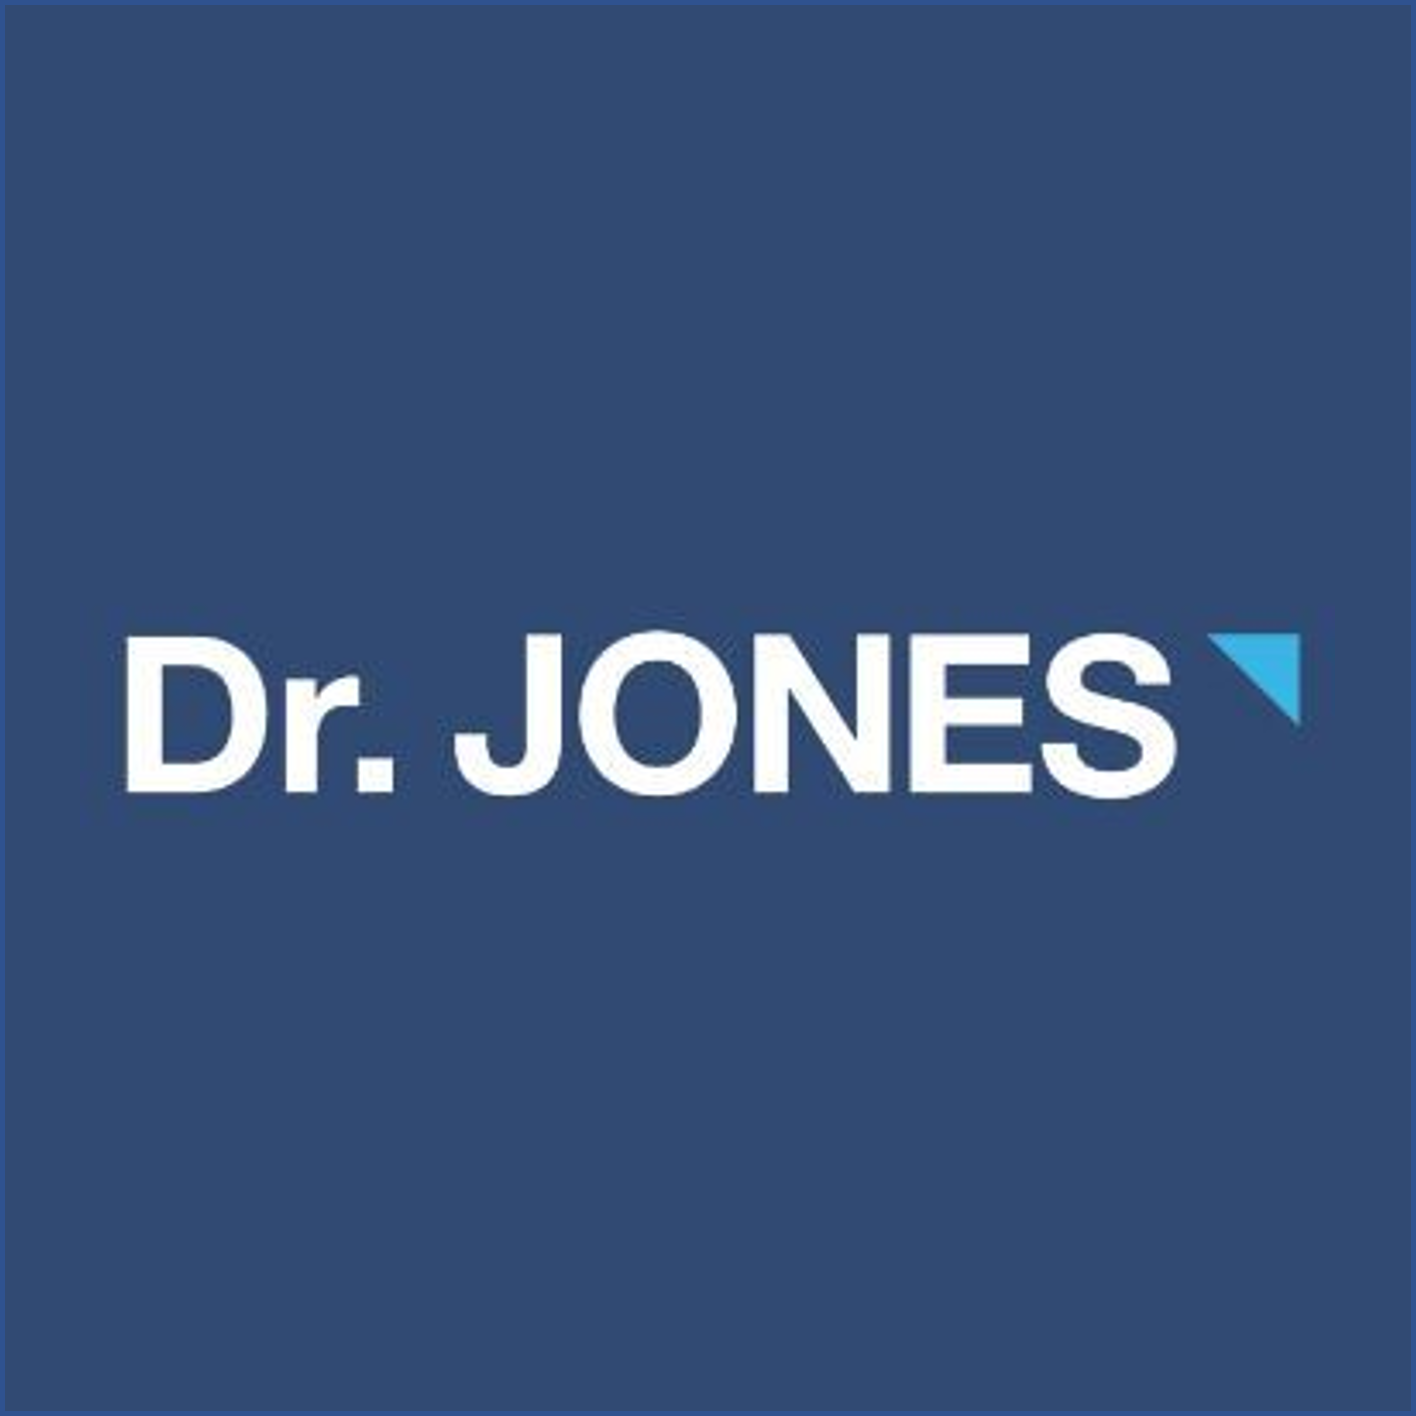 Nova aquisição do Grupo Boticário, marca masculina Dr Jones, na imagem Logo Dr Jones - com fundo azul escuro e lettering branco